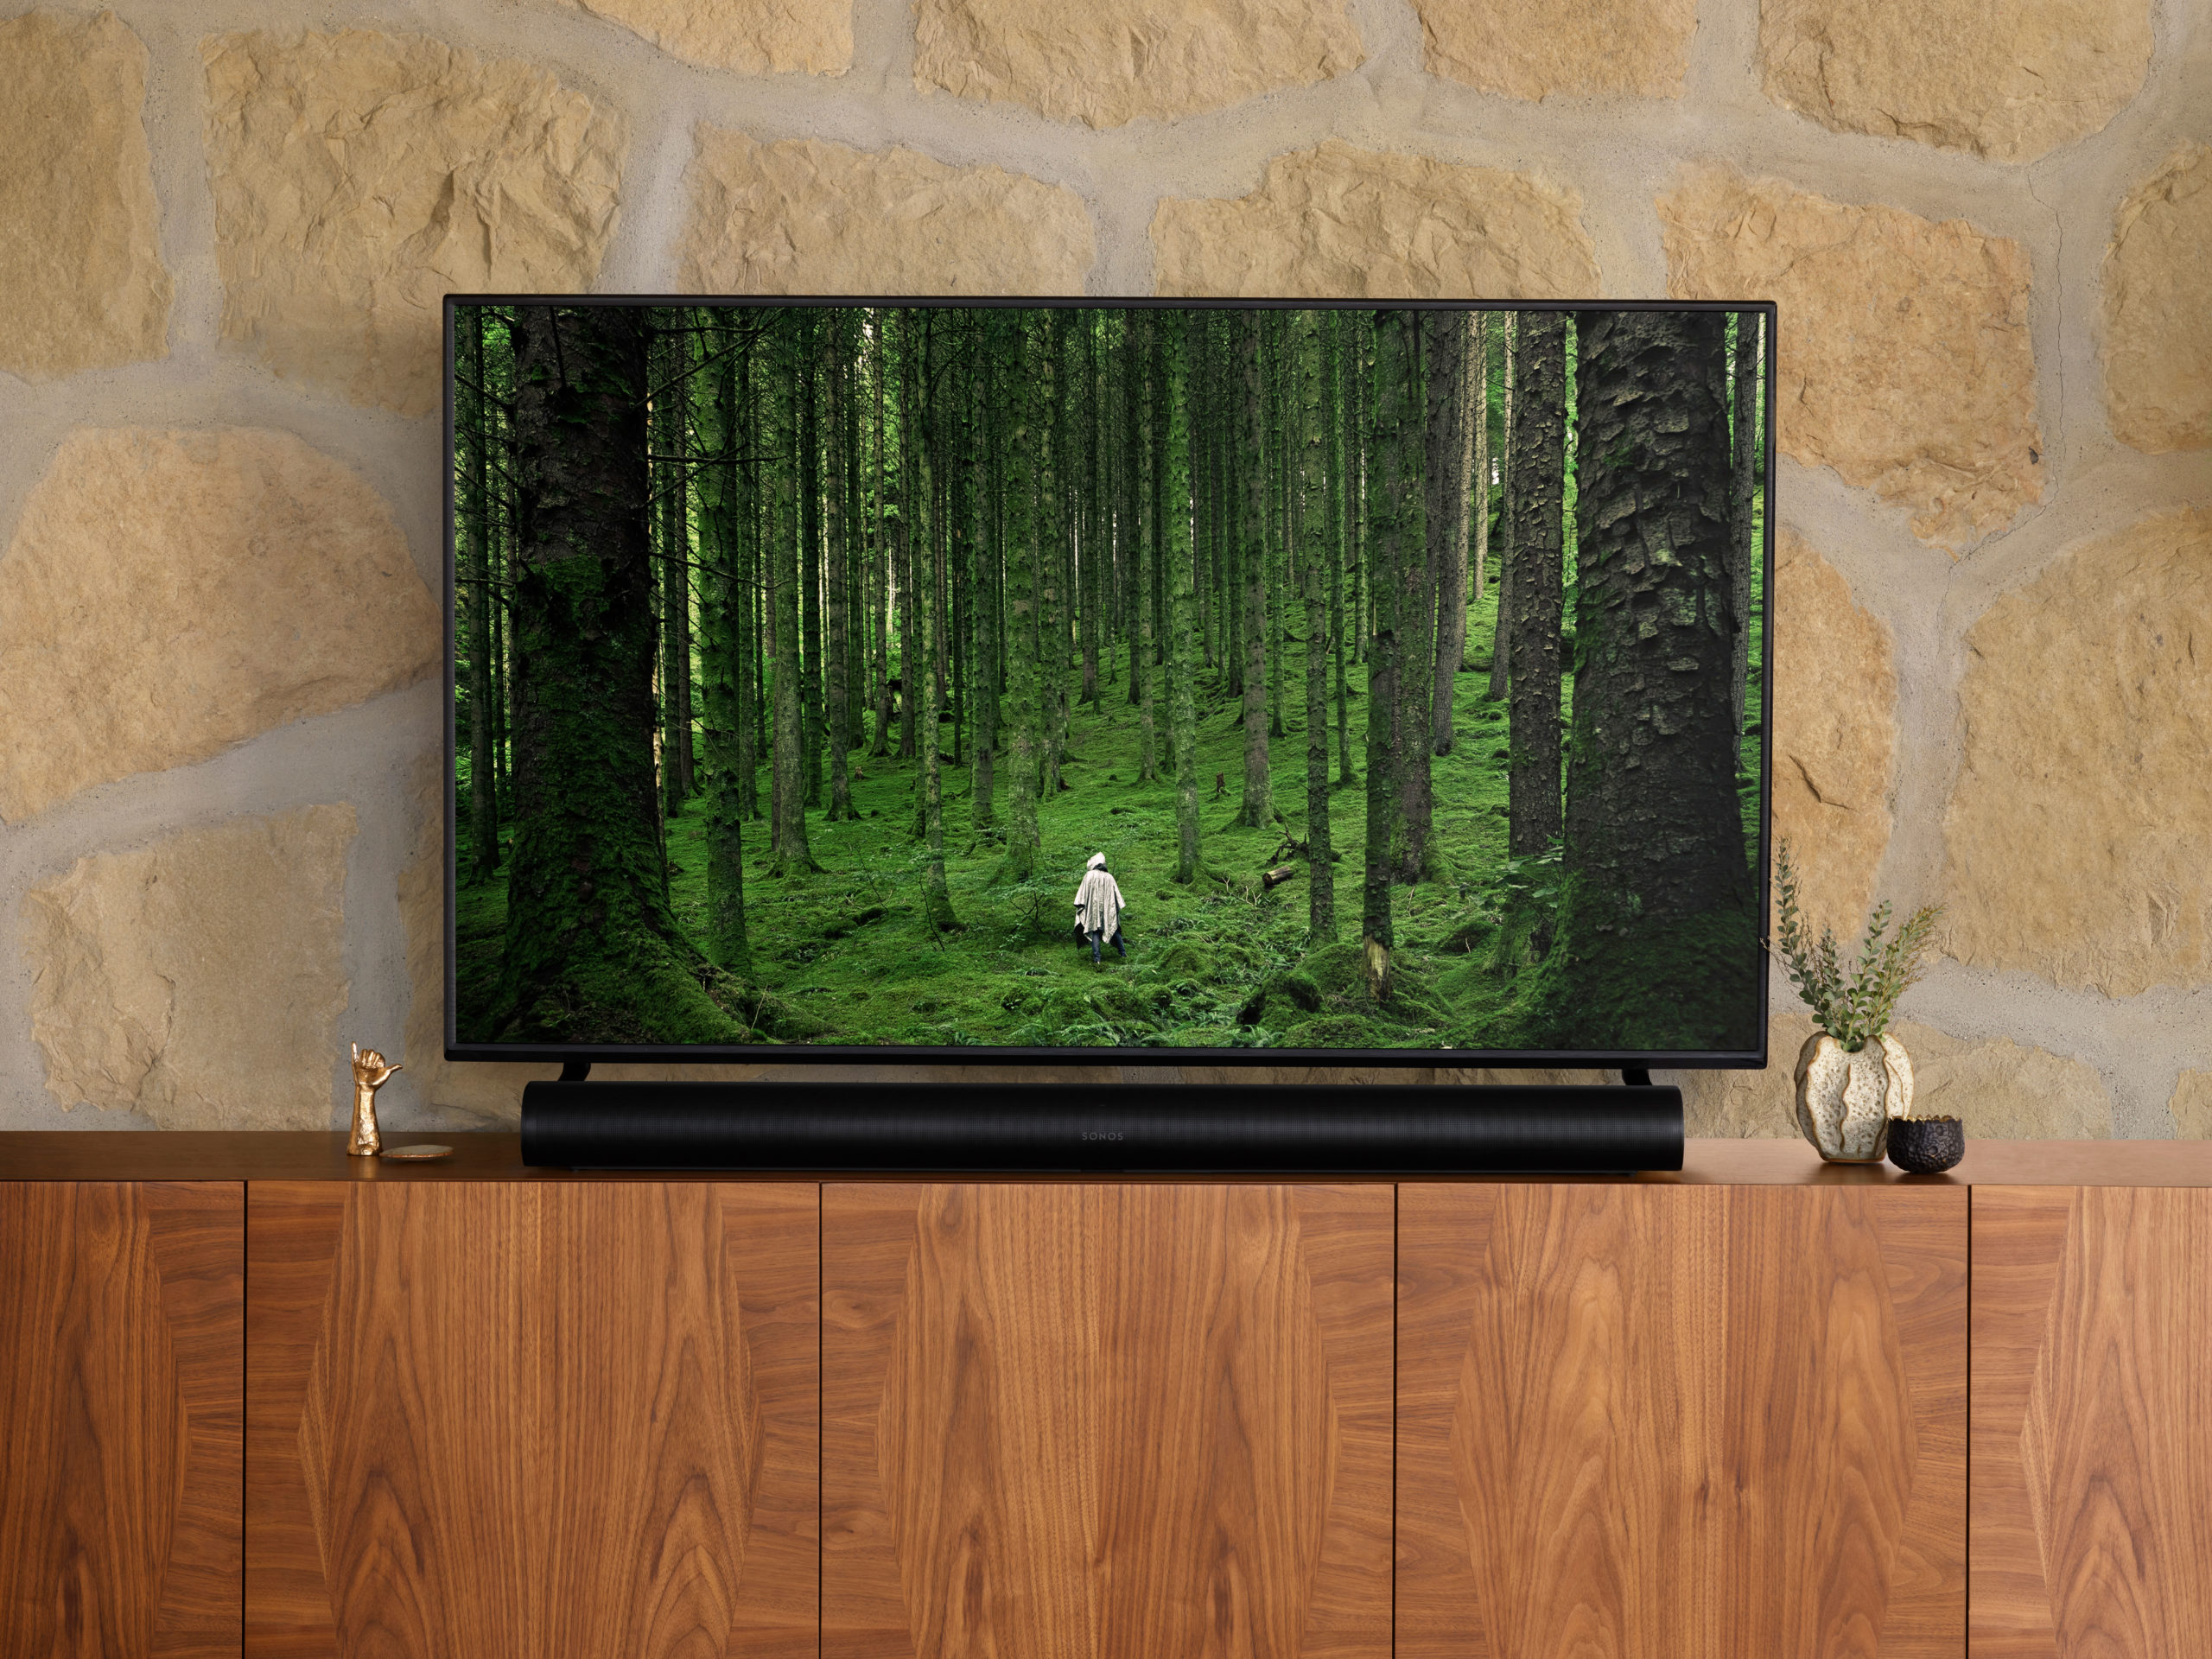 Mit 114 cm Länge wird der Sonos Arc den gewachsenen Dimensionen neuer TV-Geräte gerecht